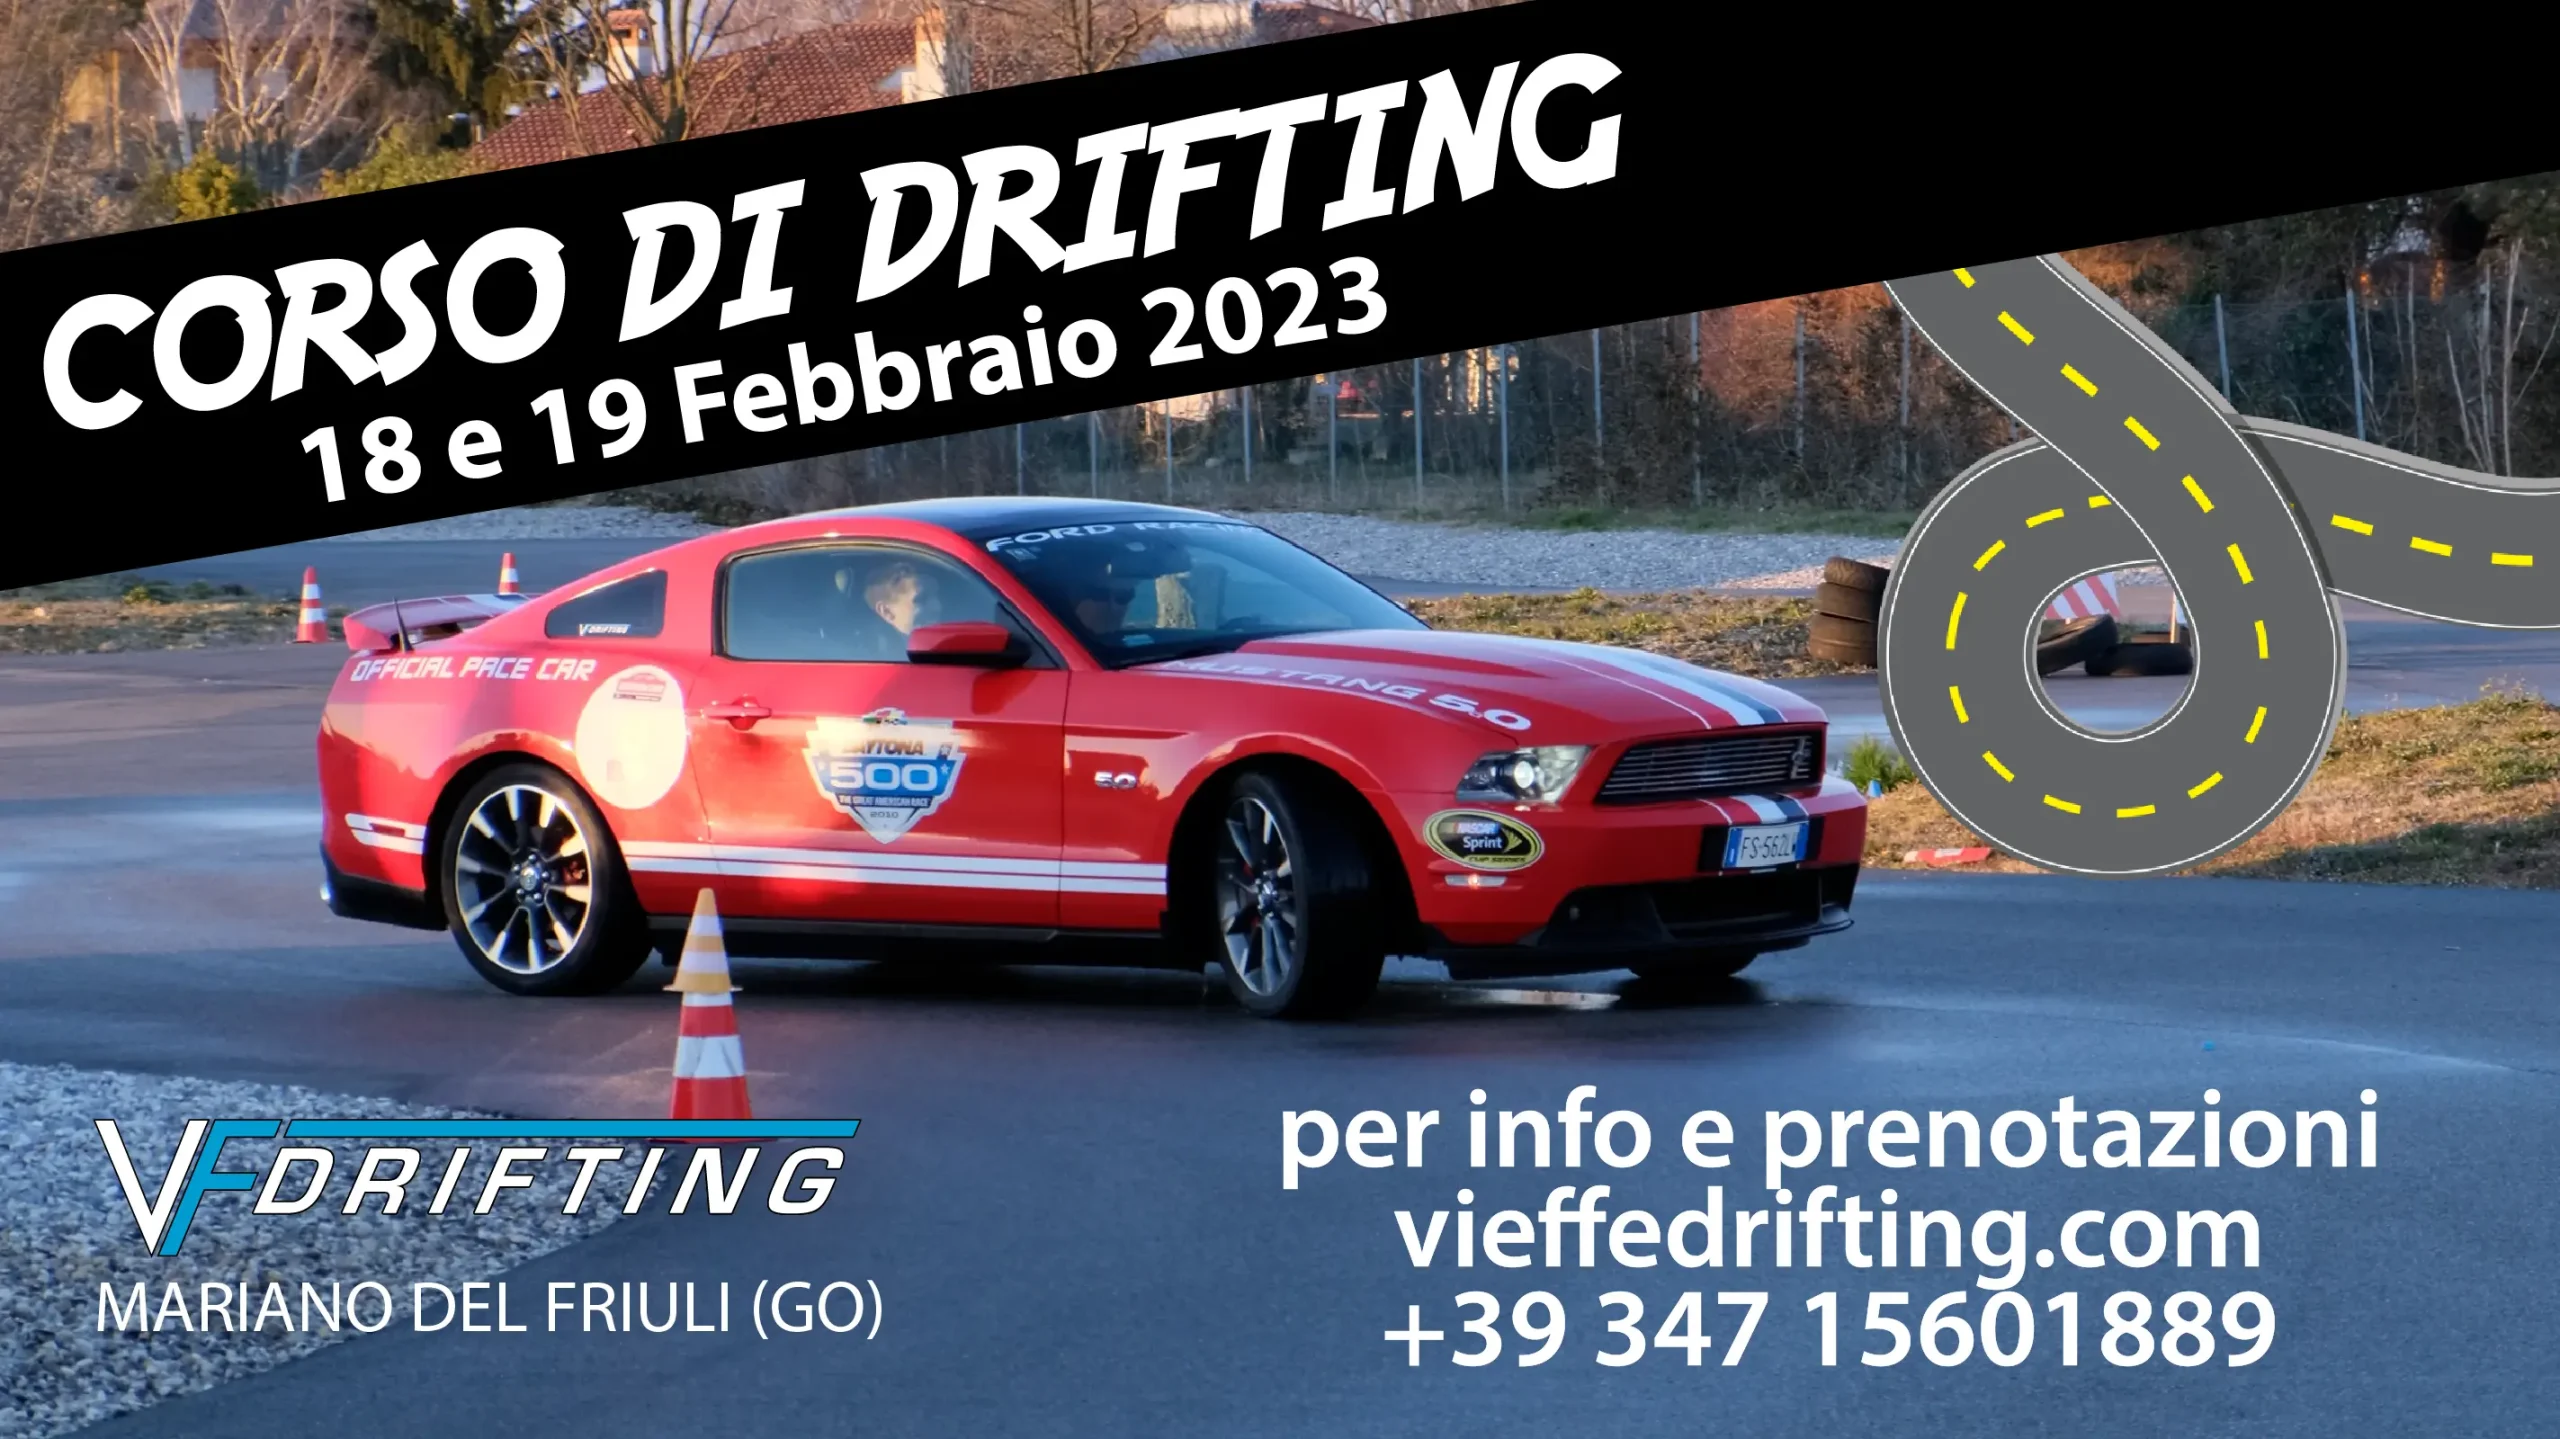 Corso di Drifting 18-19 febbraio 2023